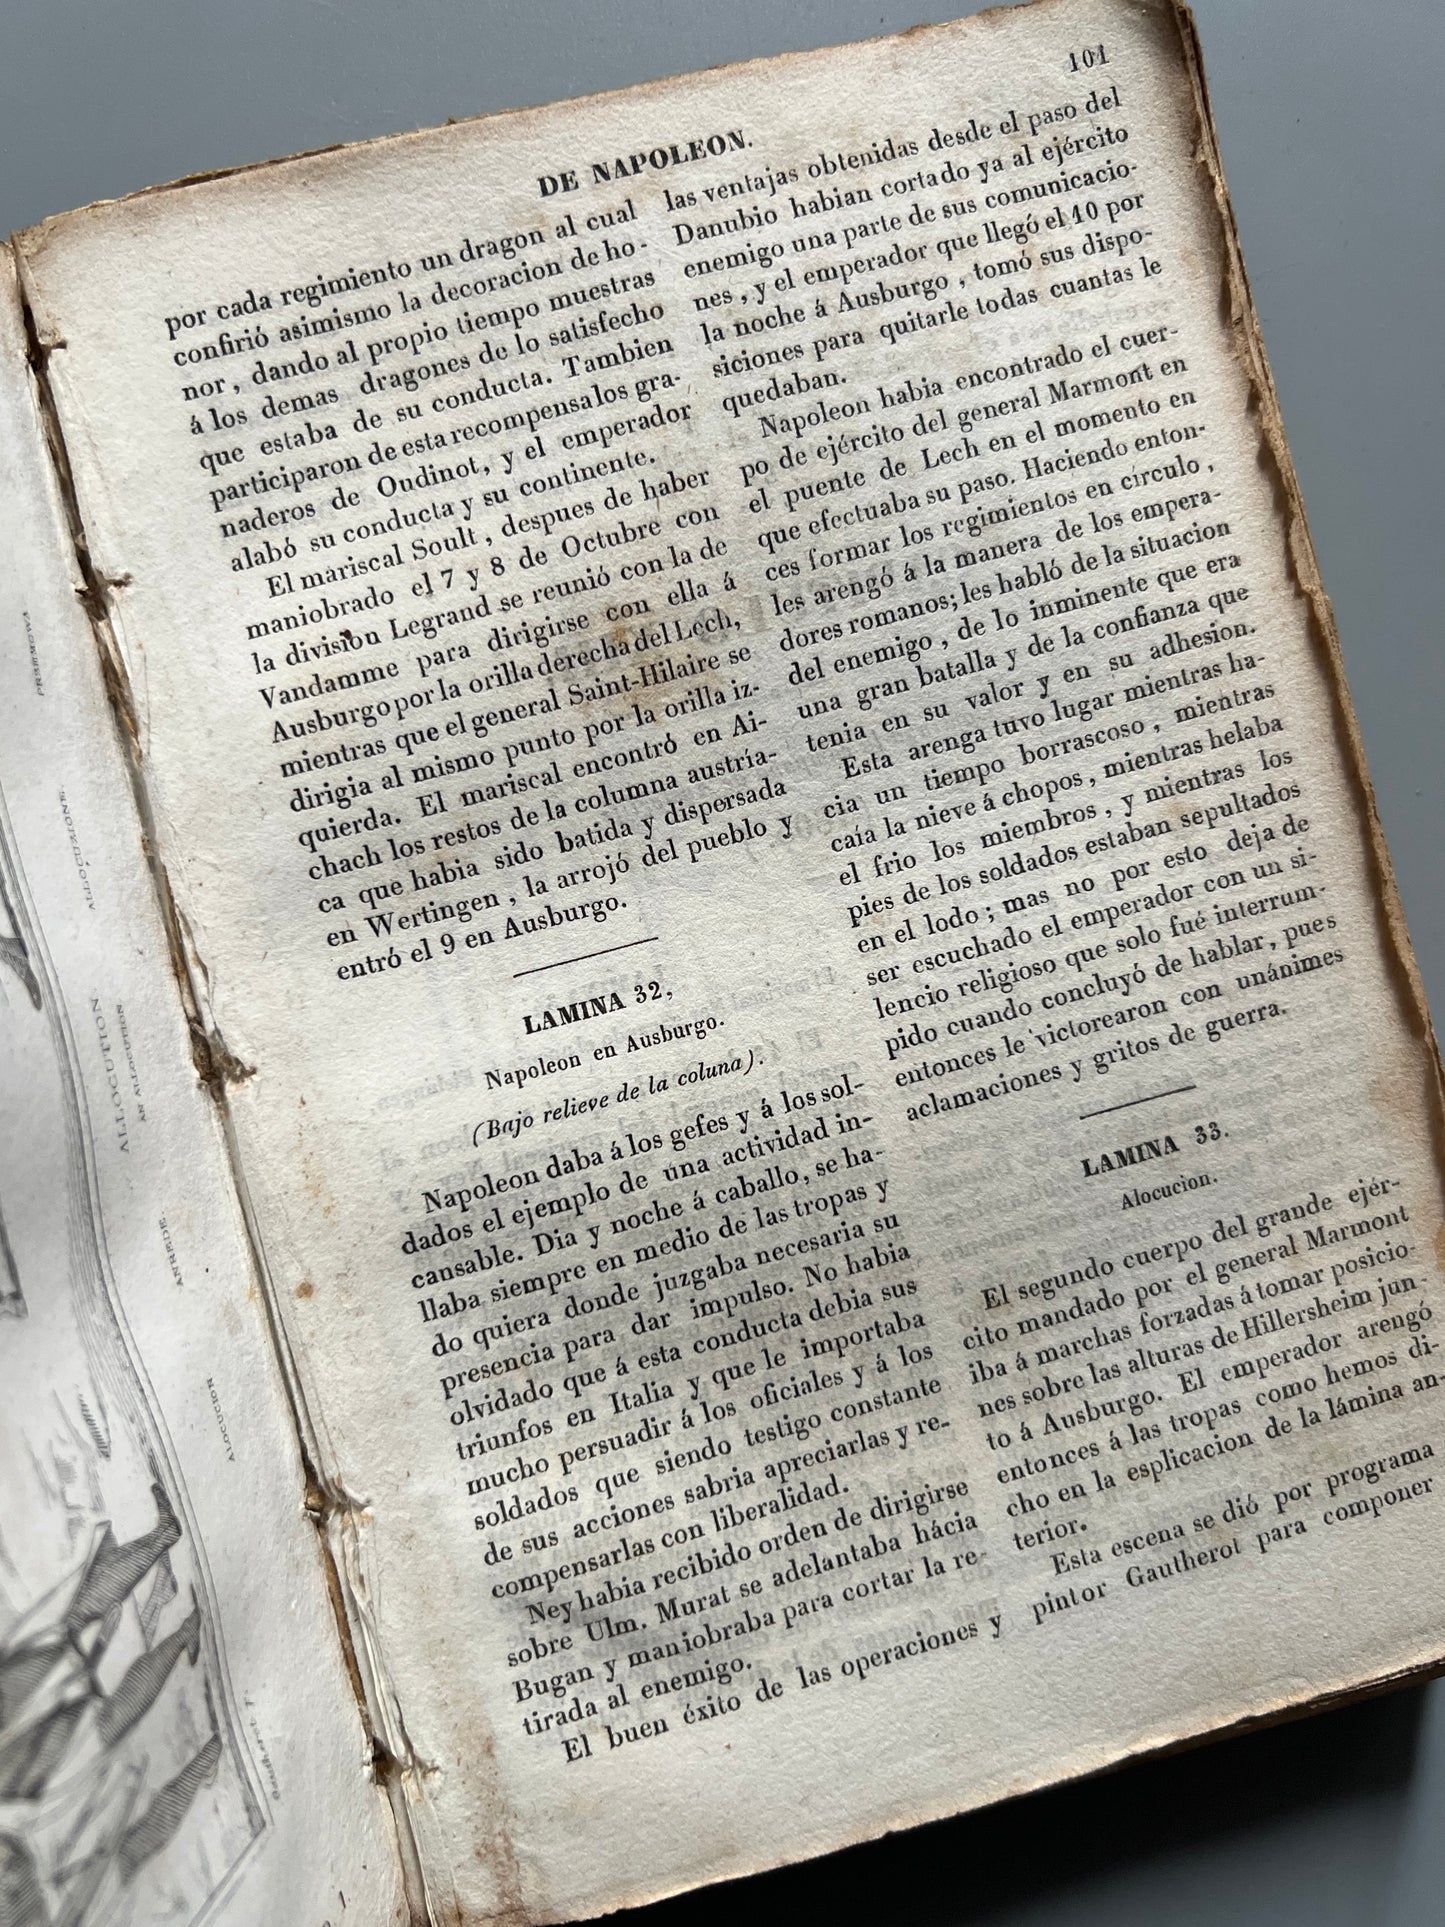 Historia del emperador Napoleón, F. P. - Imprenta de Joaquín Verdaguer, 1839